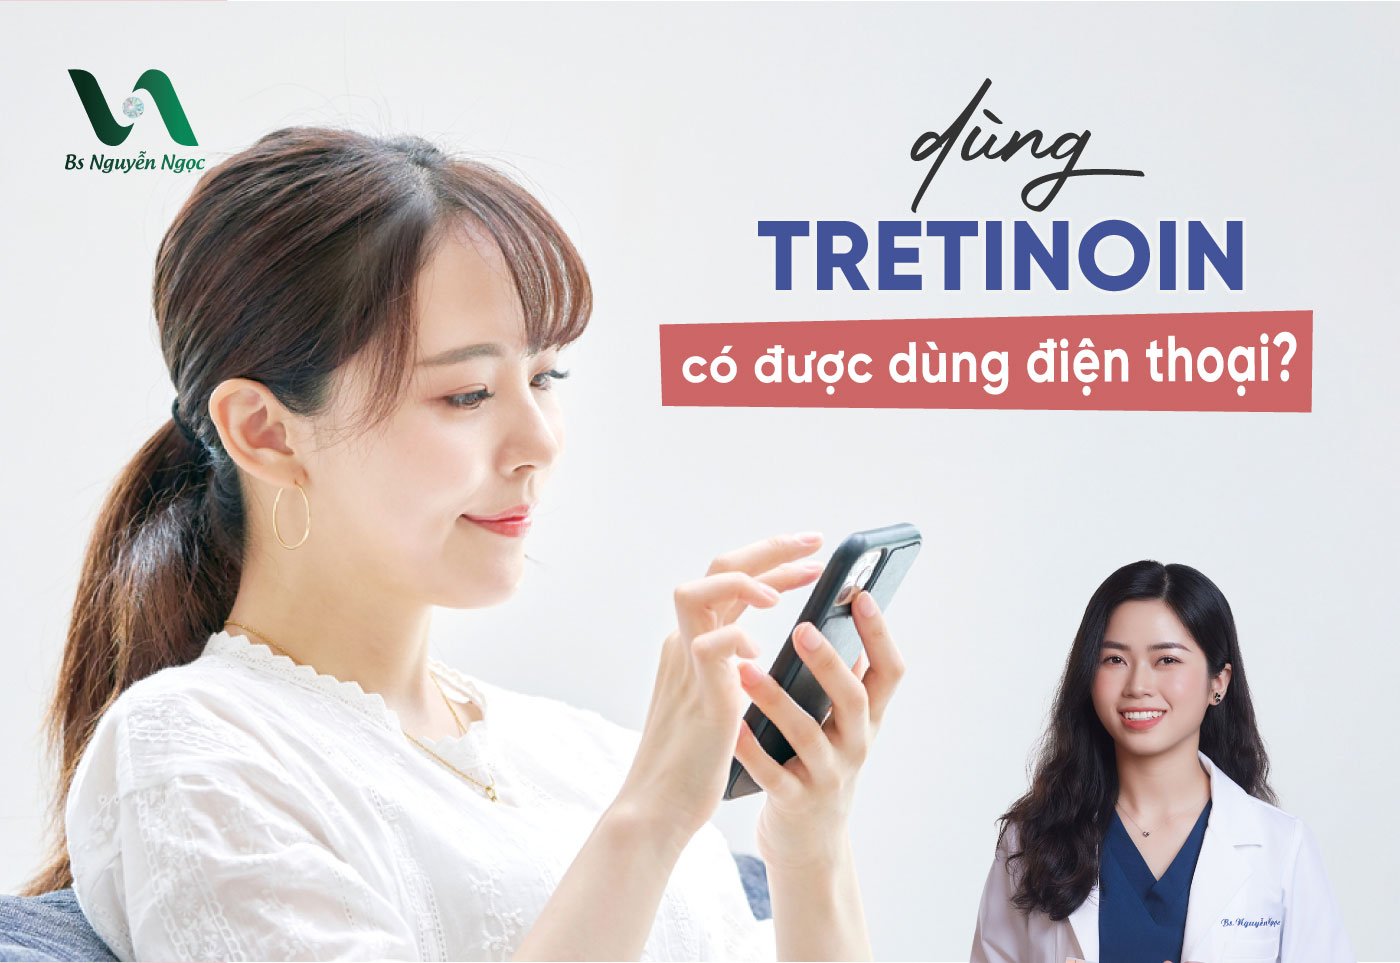 Dùng Tretinoin có được dùng điện thoại?